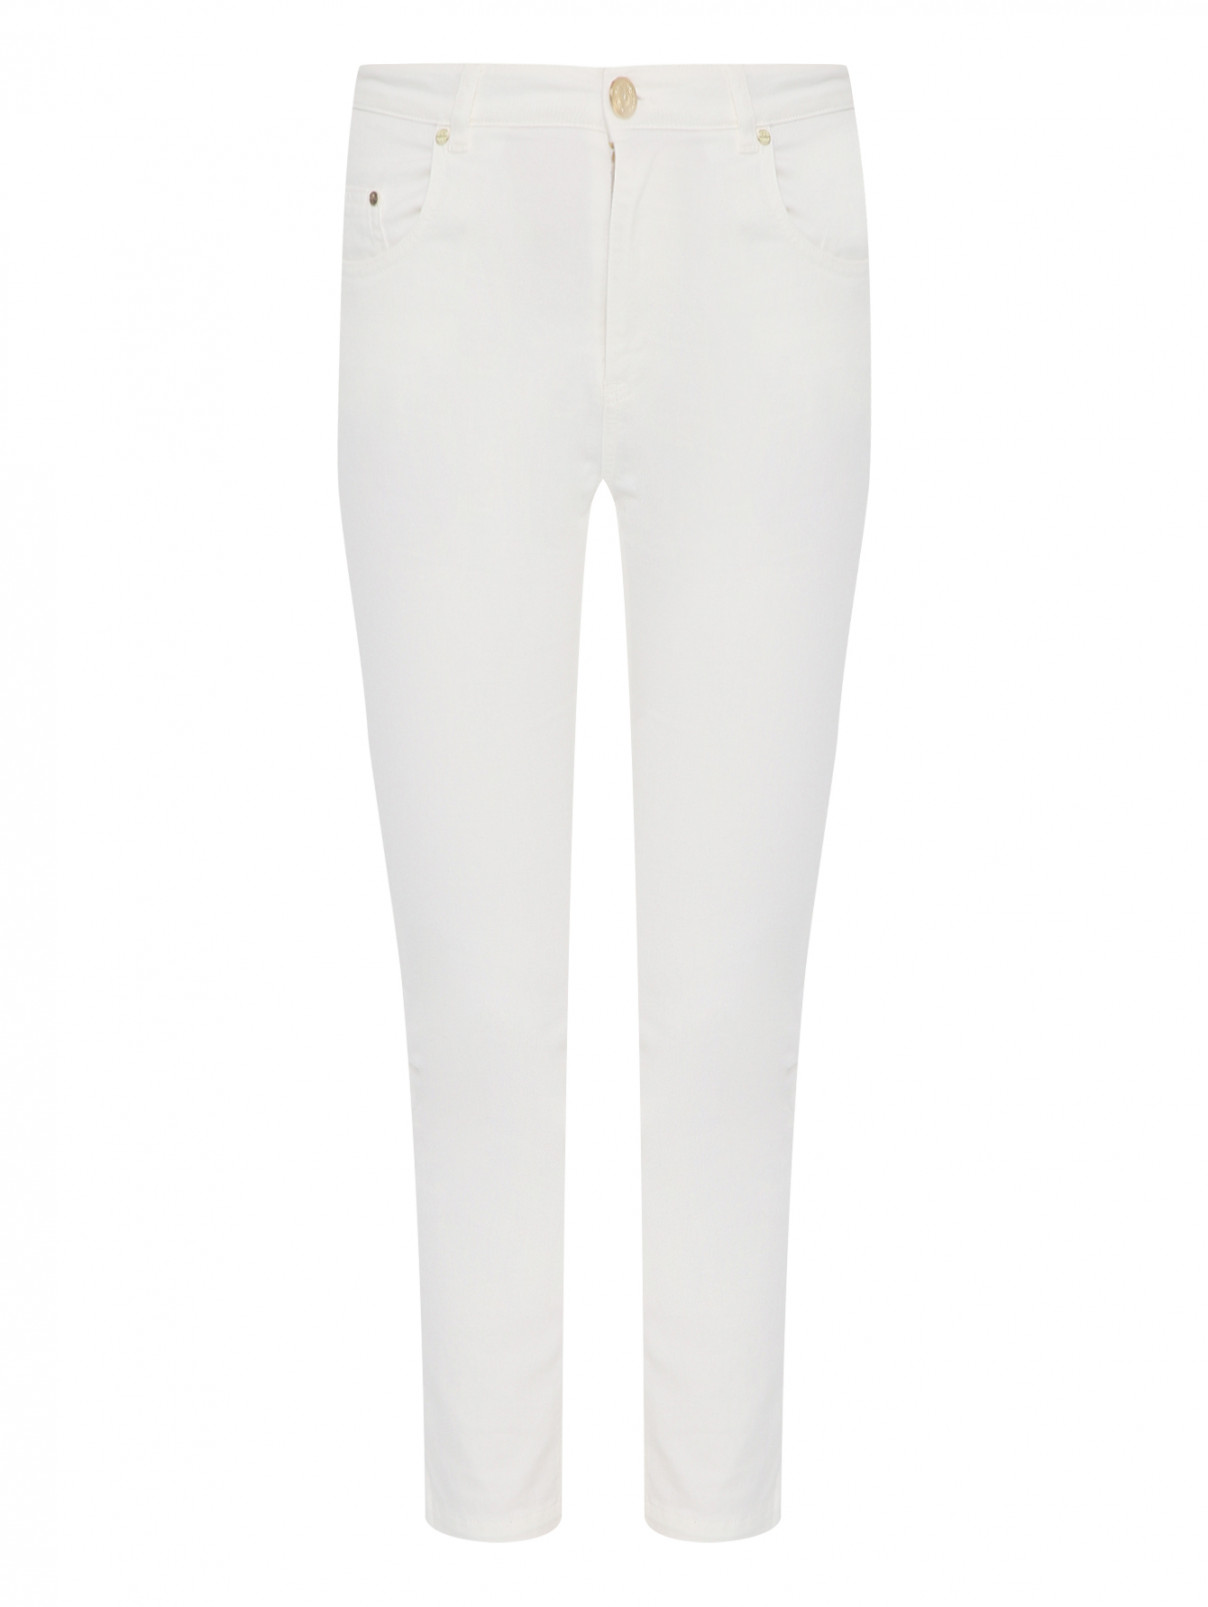 Однотонные брюки из хлопка Elisabetta Franchi  –  Общий вид  – Цвет:  Белый